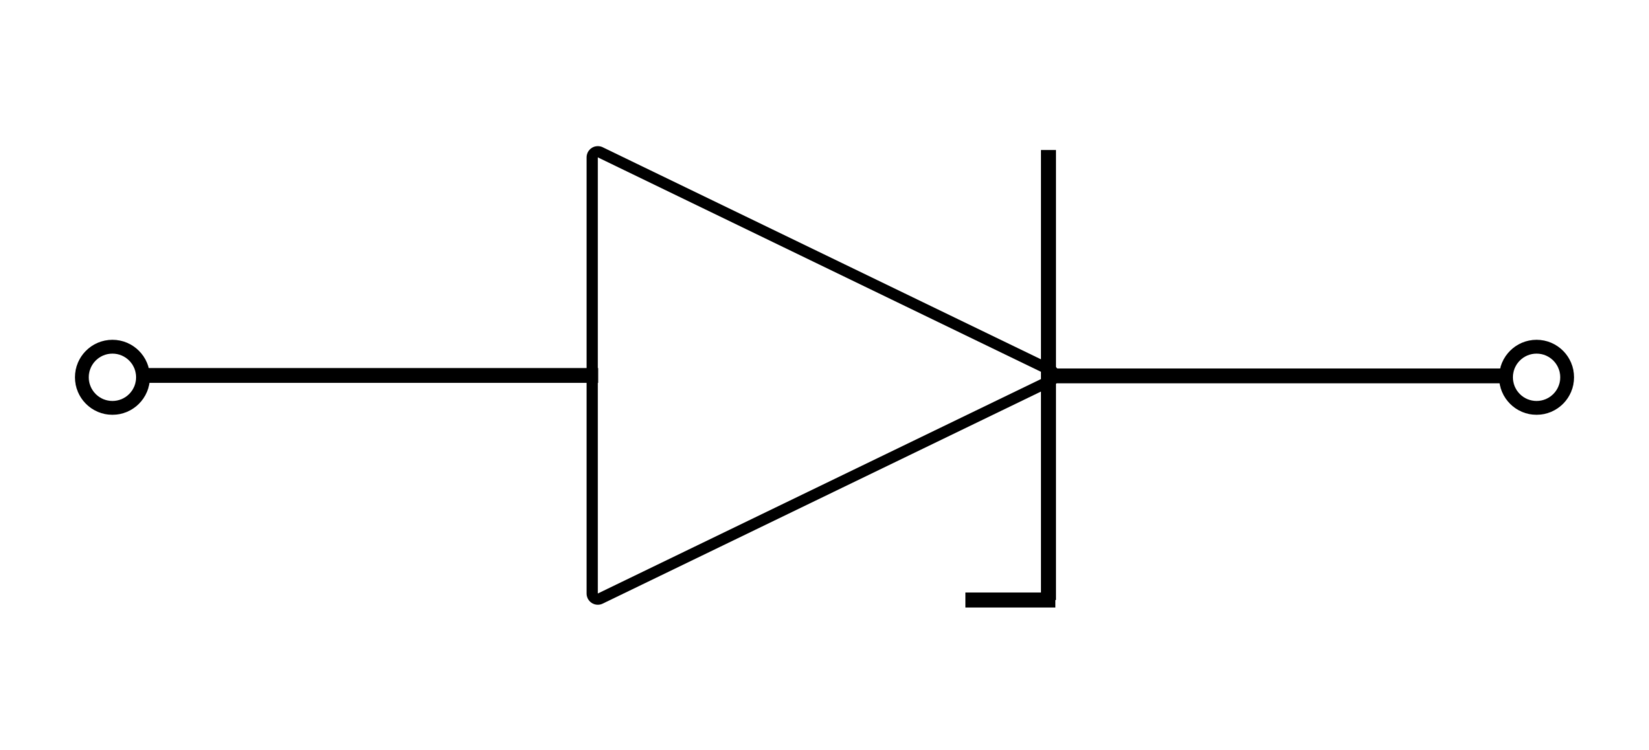 Square,Triangle,Diagram